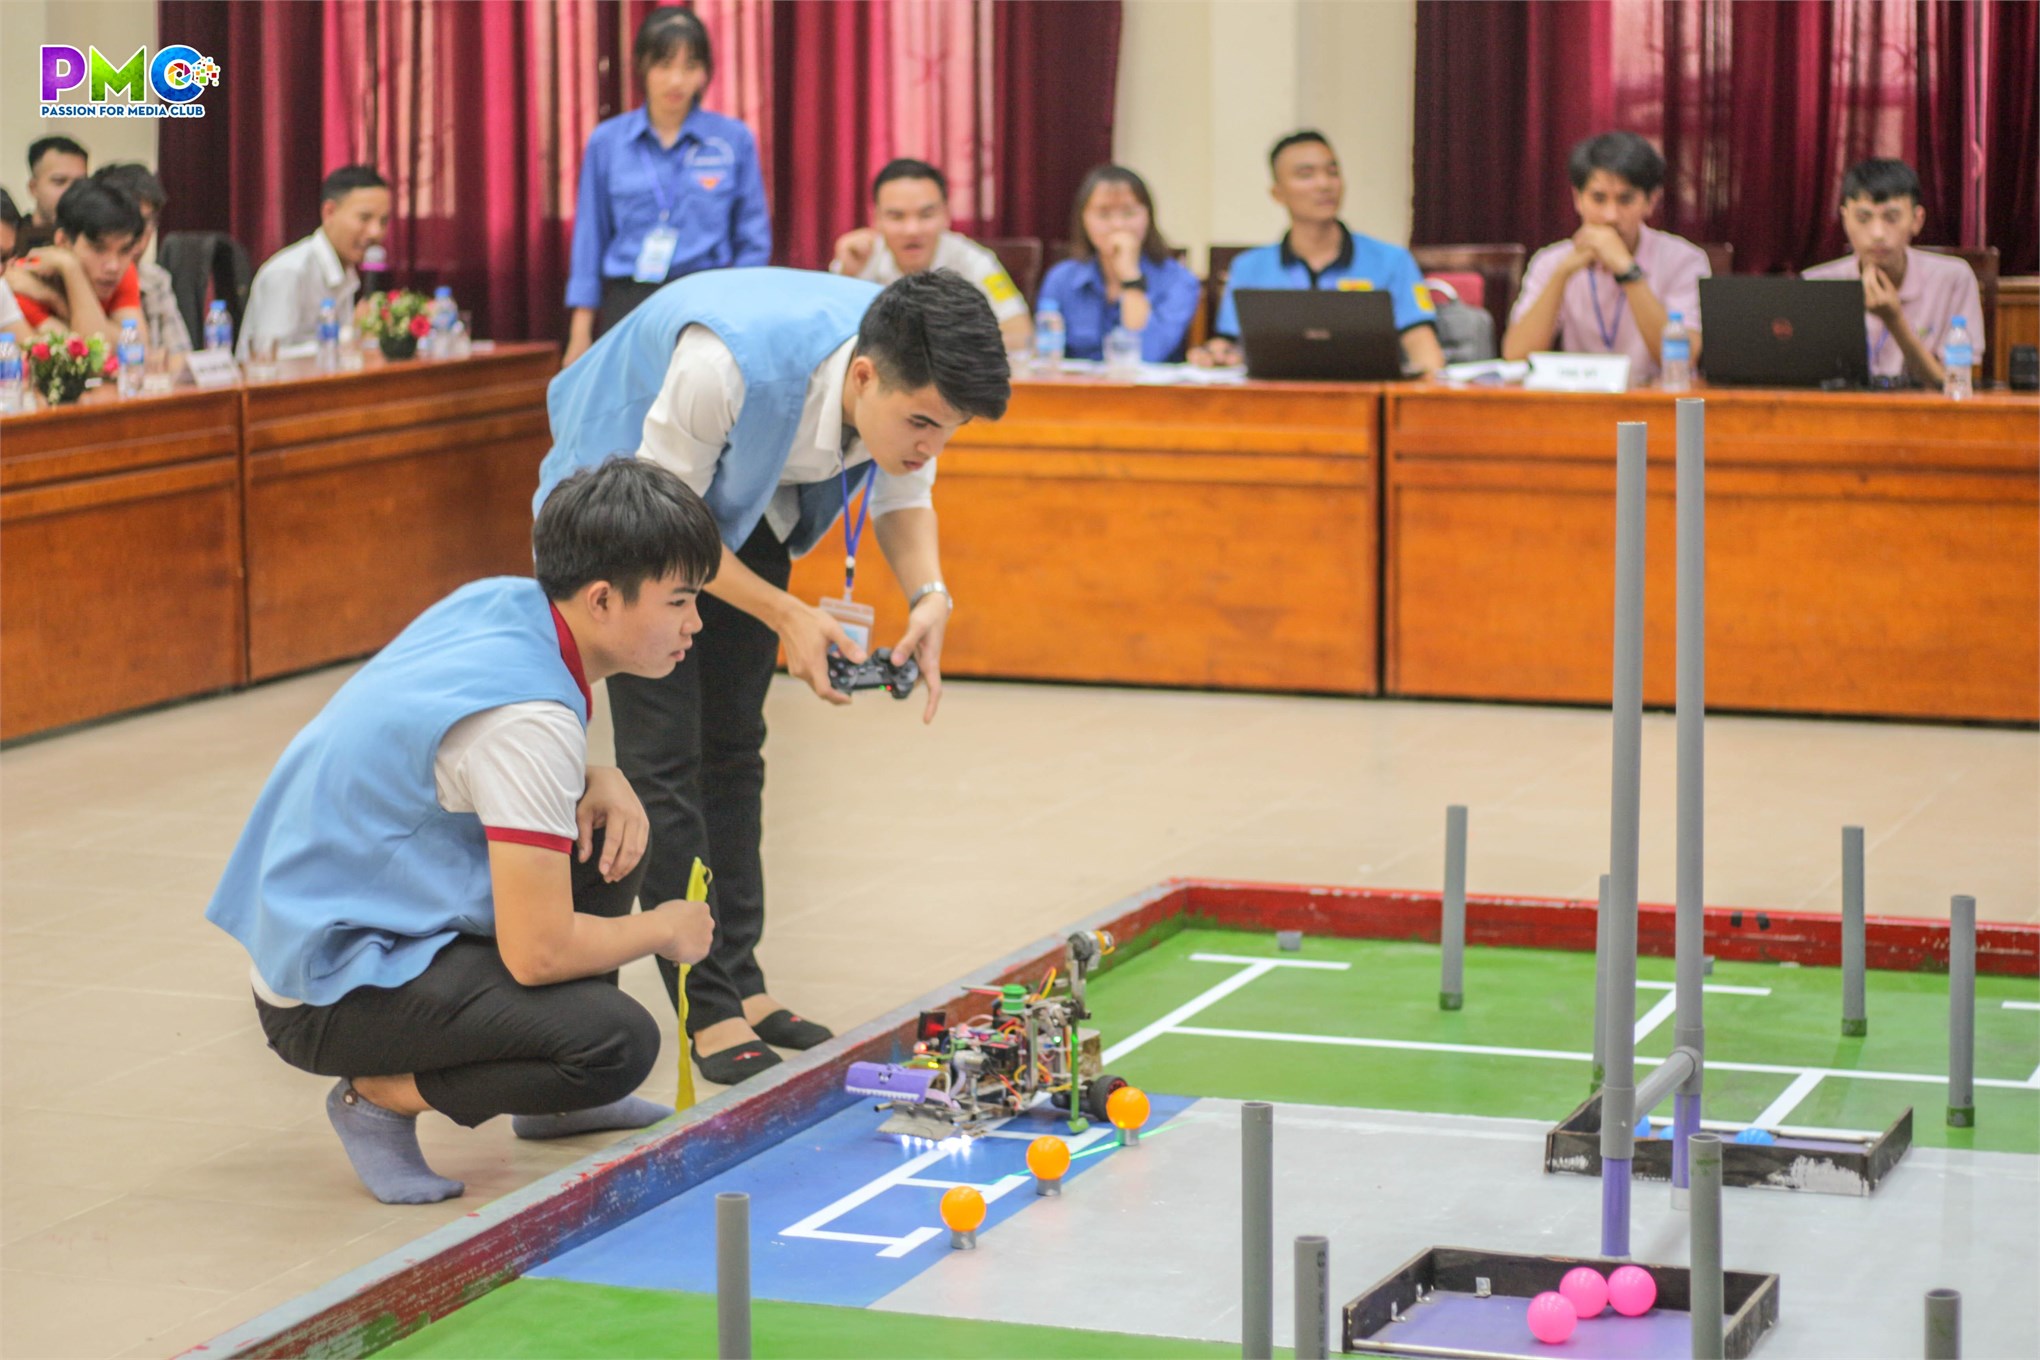 18 đội tham gia tranh tài tại cuộc thi sáng tạo robot mini khoa điện tử năm 2019